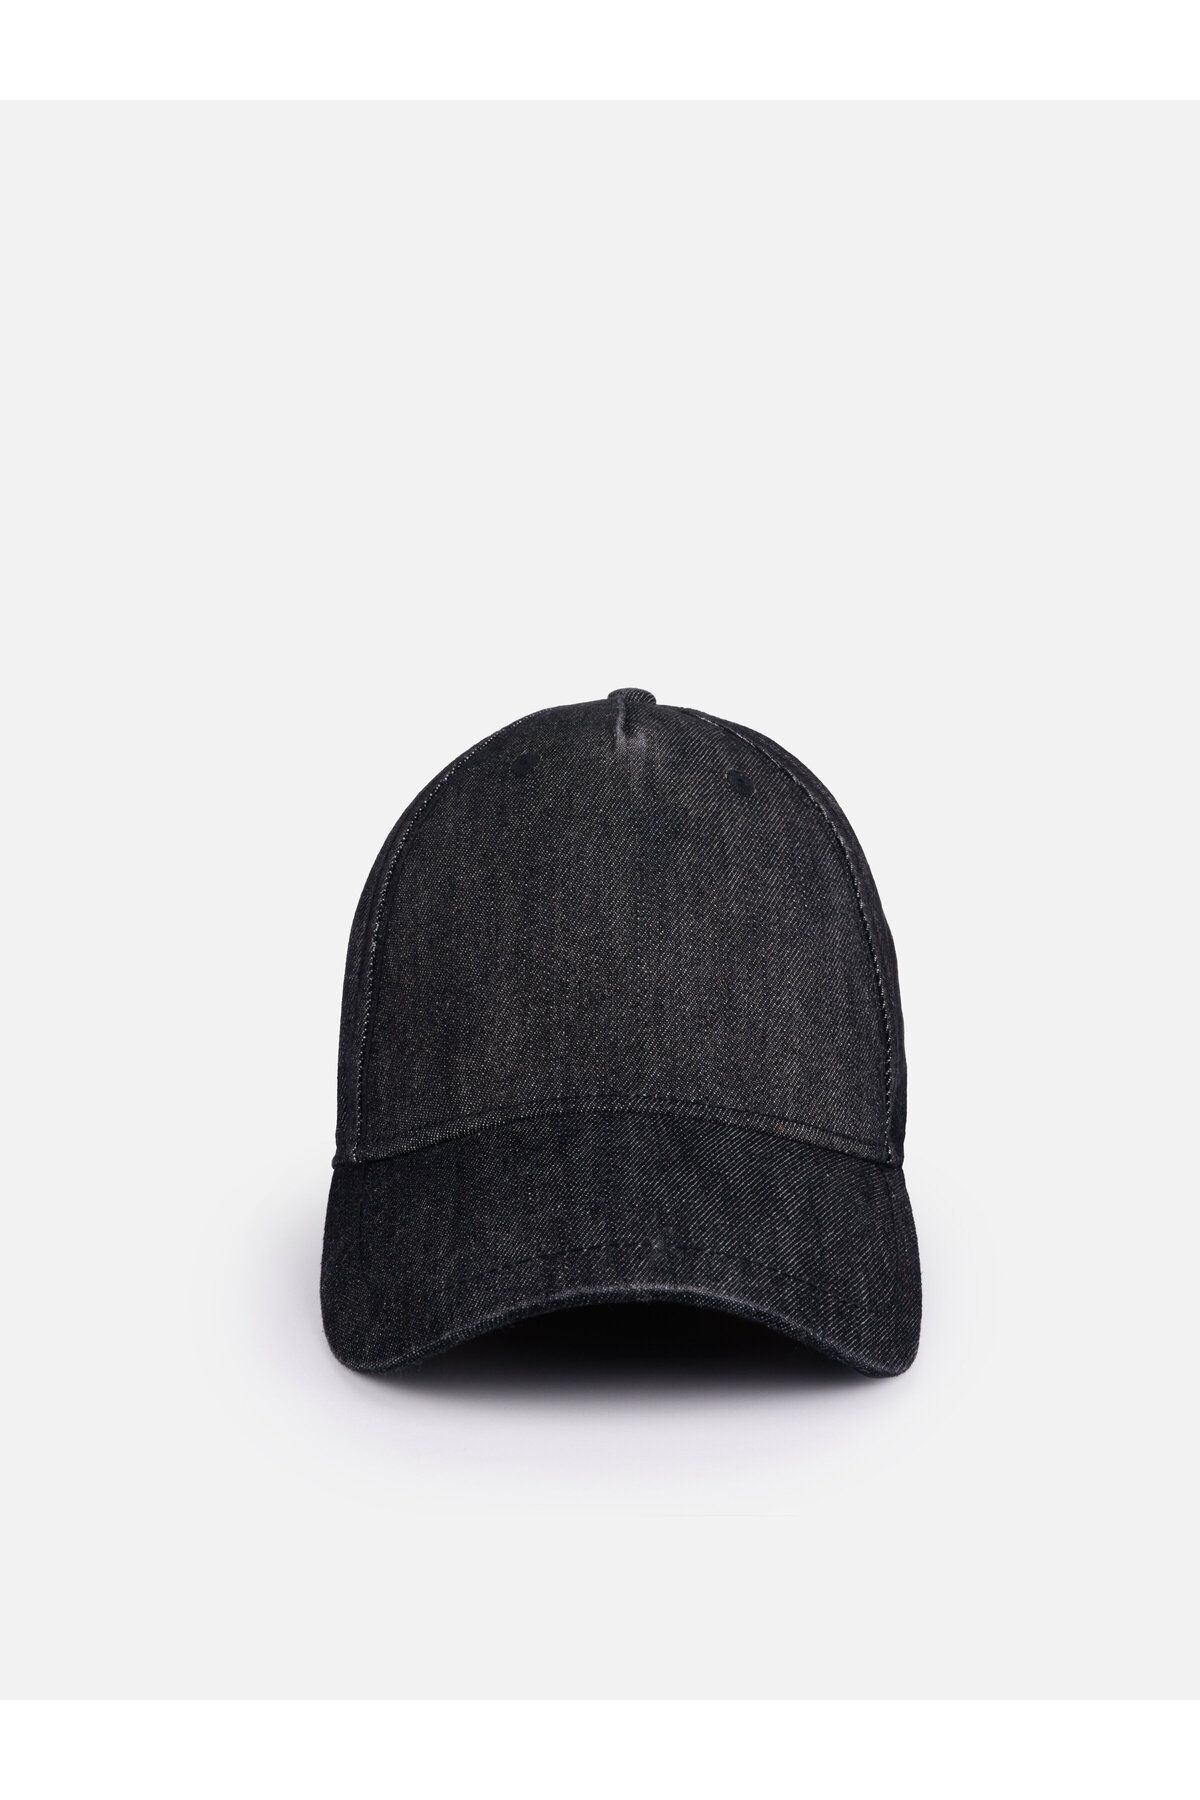 Colin’s Basic Siyah Erkek Şapka